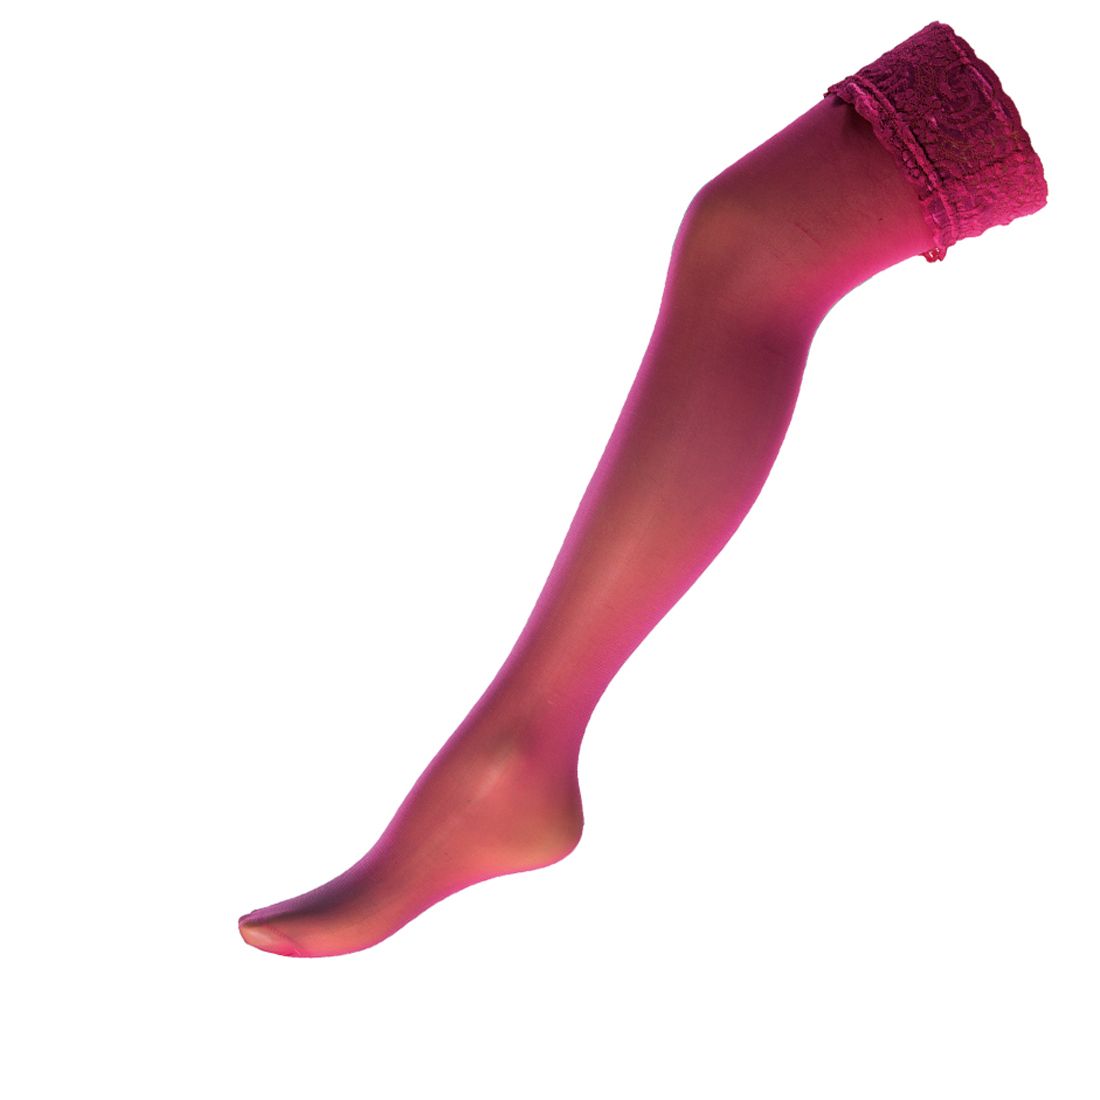 Αποκριάτικη Κάλτσα Nylon Φούξια Με Δαντέλα (71381)